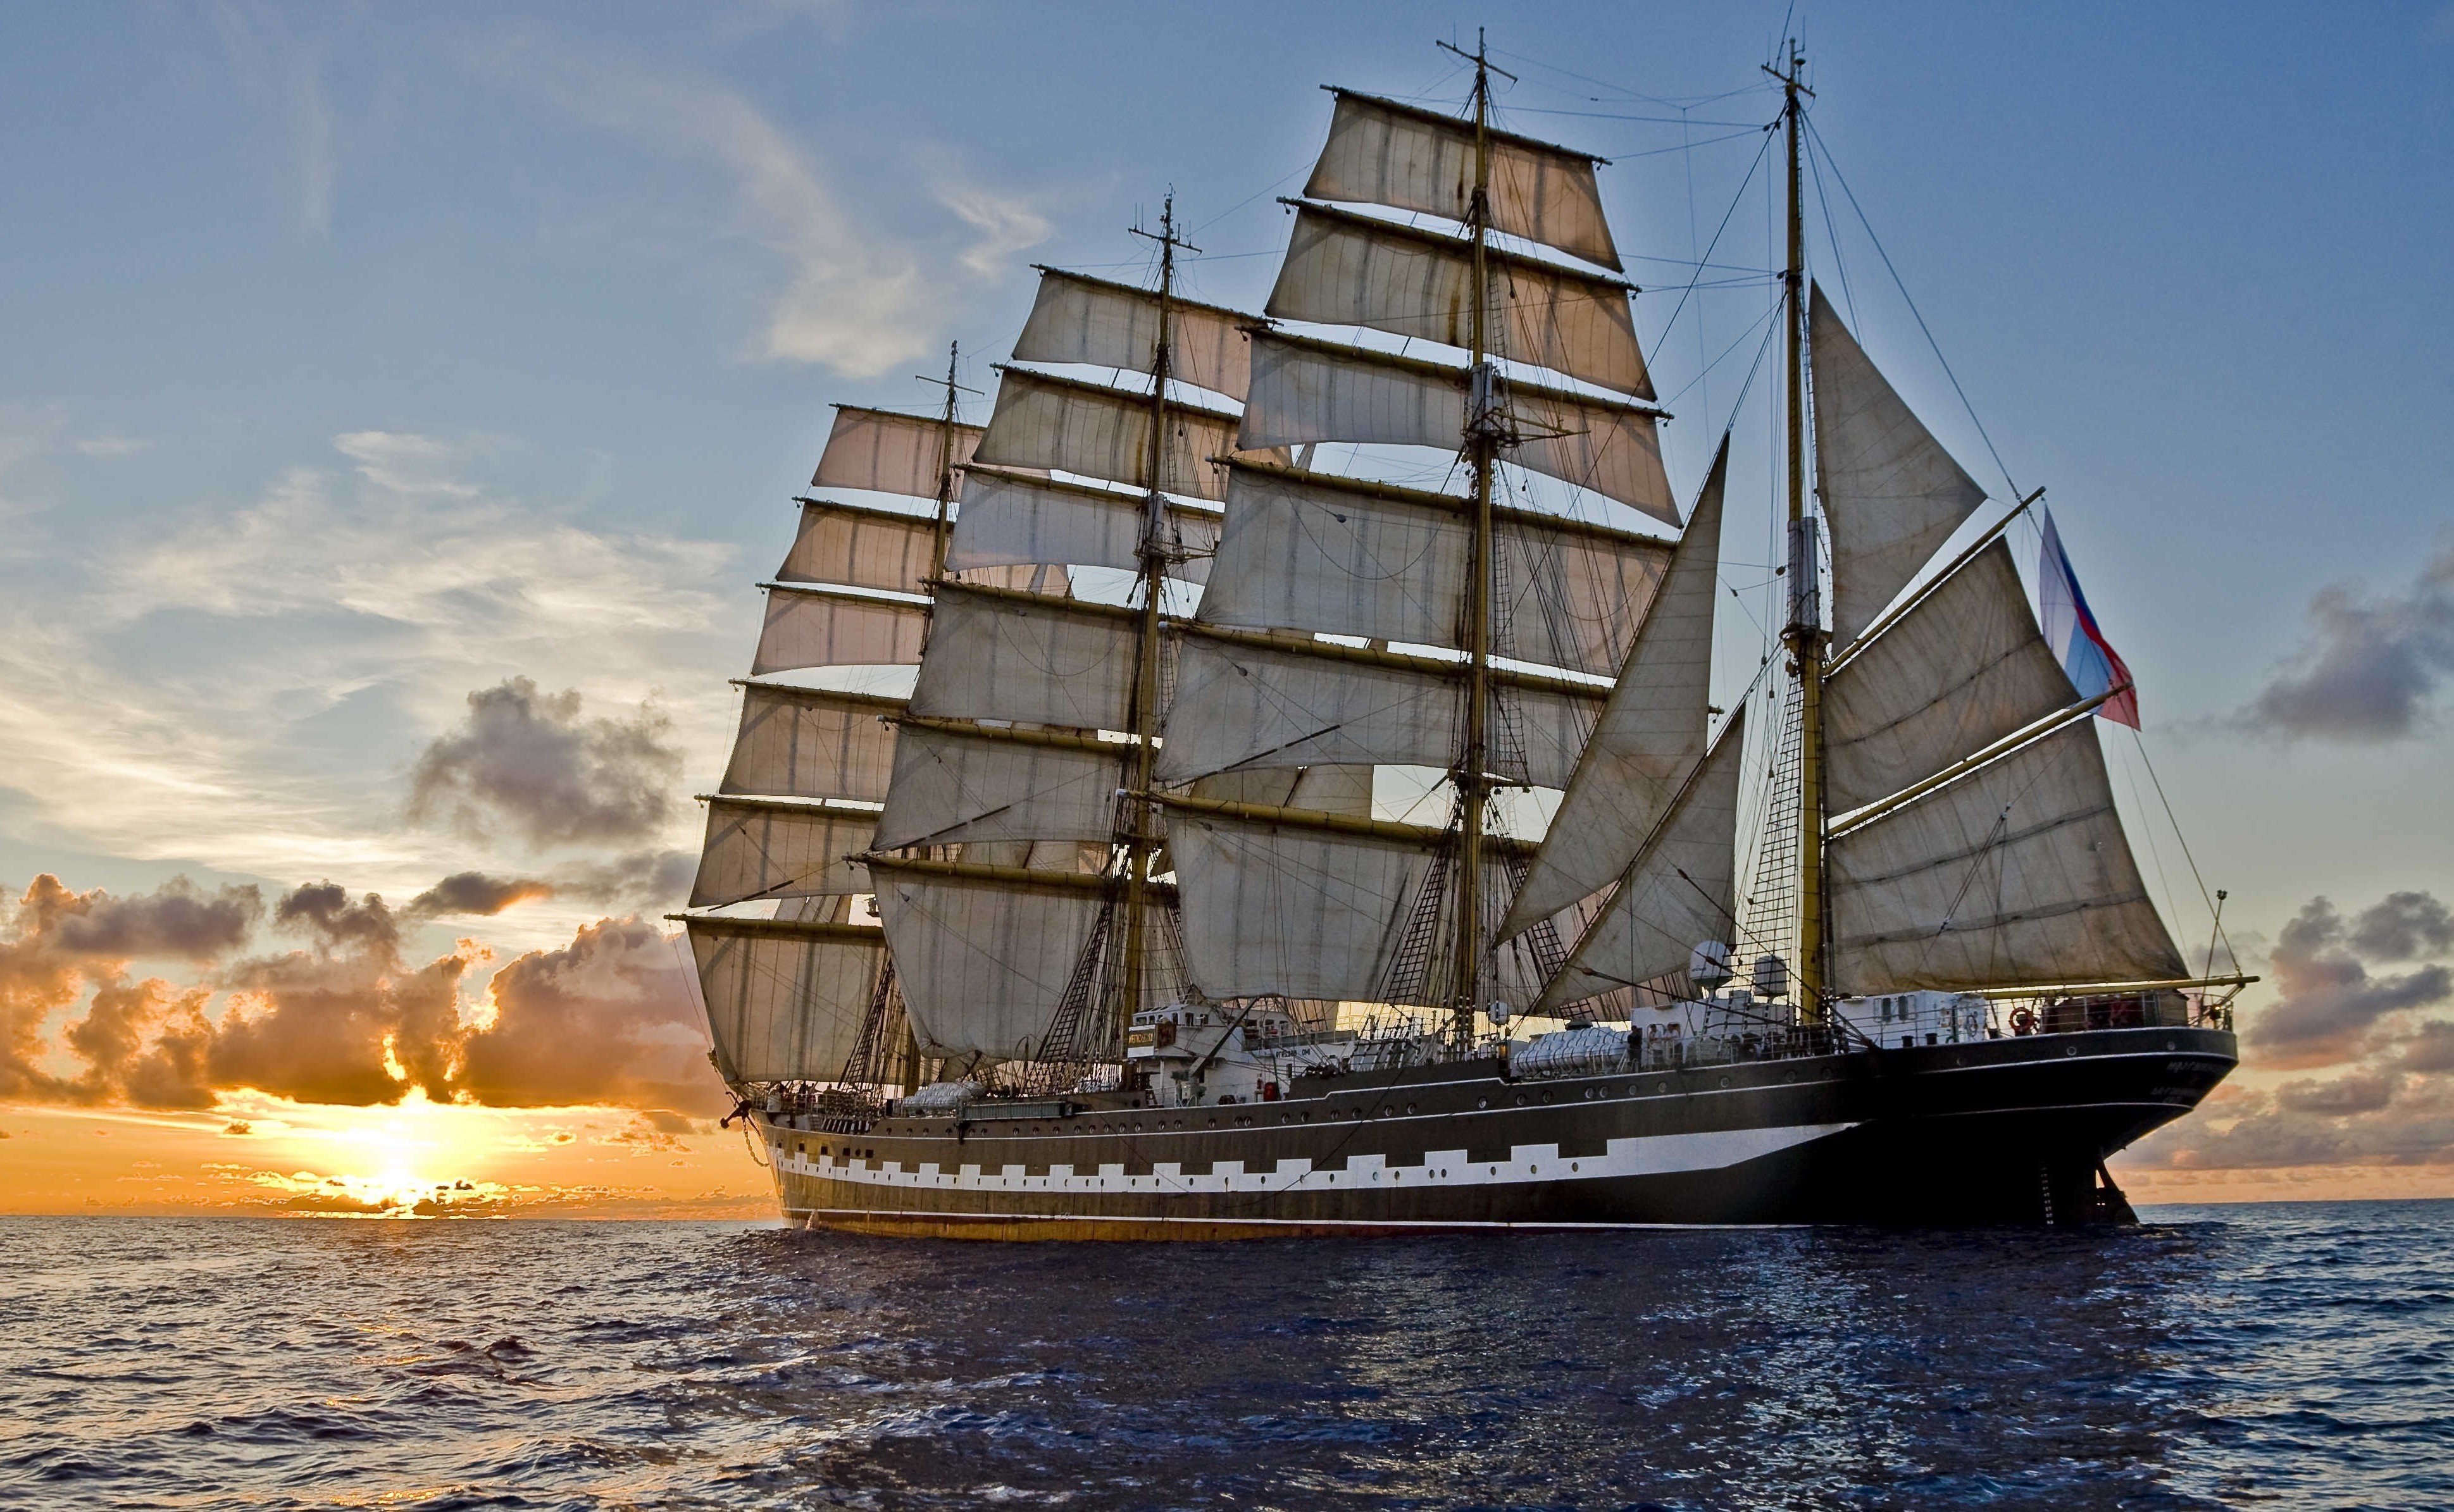 免费照片下午，一艘大型帆船在夕阳西下的海面上扬帆起航